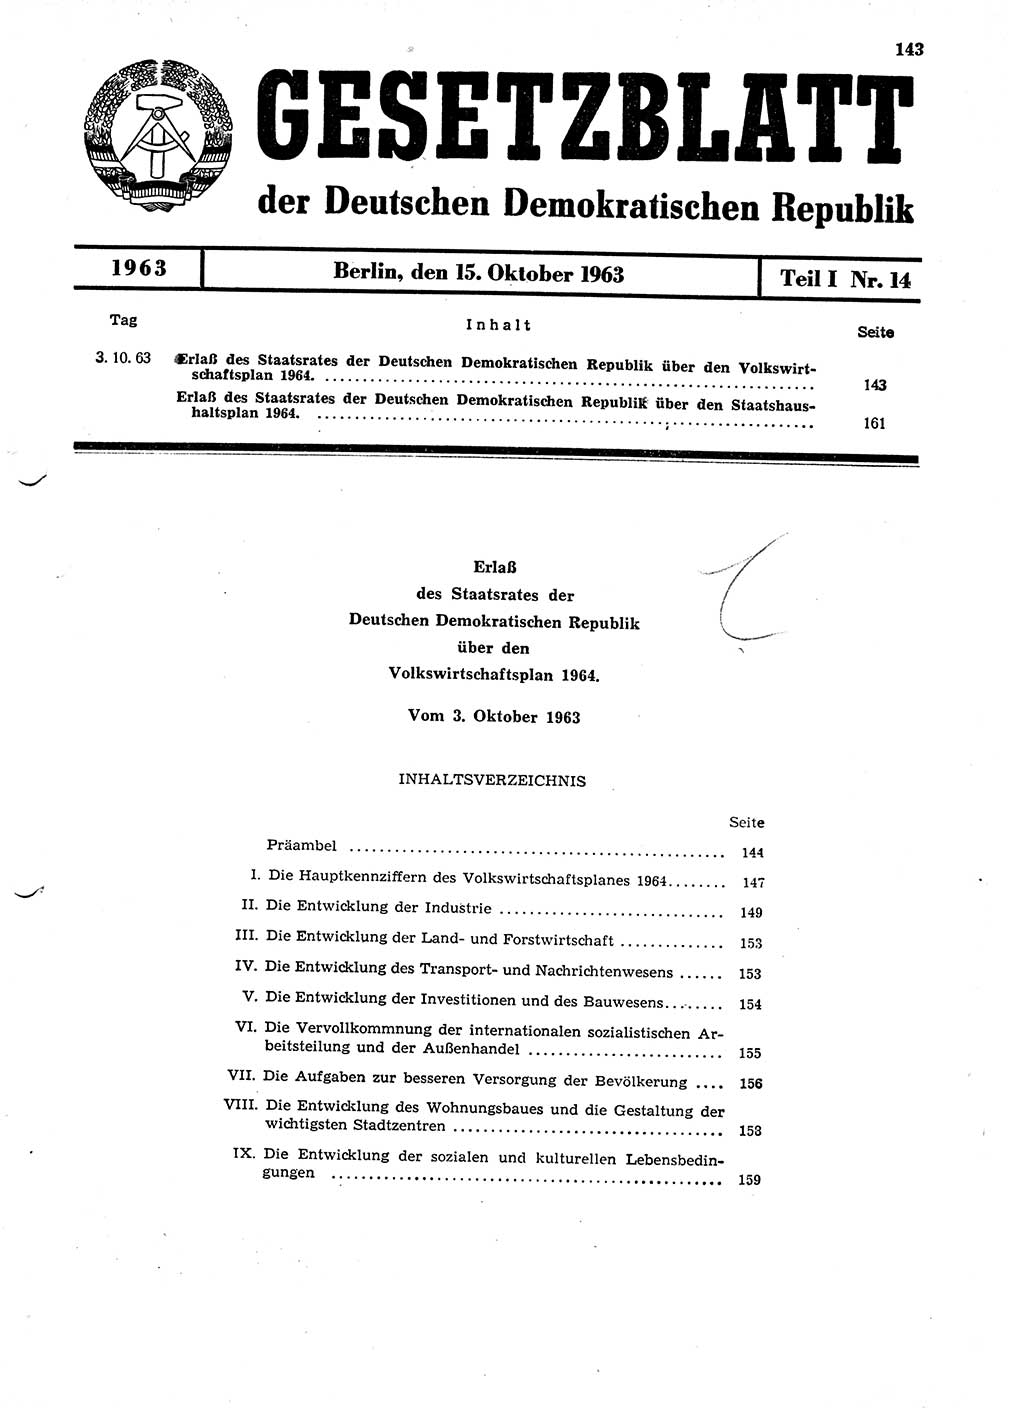 Gesetzblatt (GBl.) der Deutschen Demokratischen Republik (DDR) Teil Ⅰ 1963, Seite 143 (GBl. DDR Ⅰ 1963, S. 143)